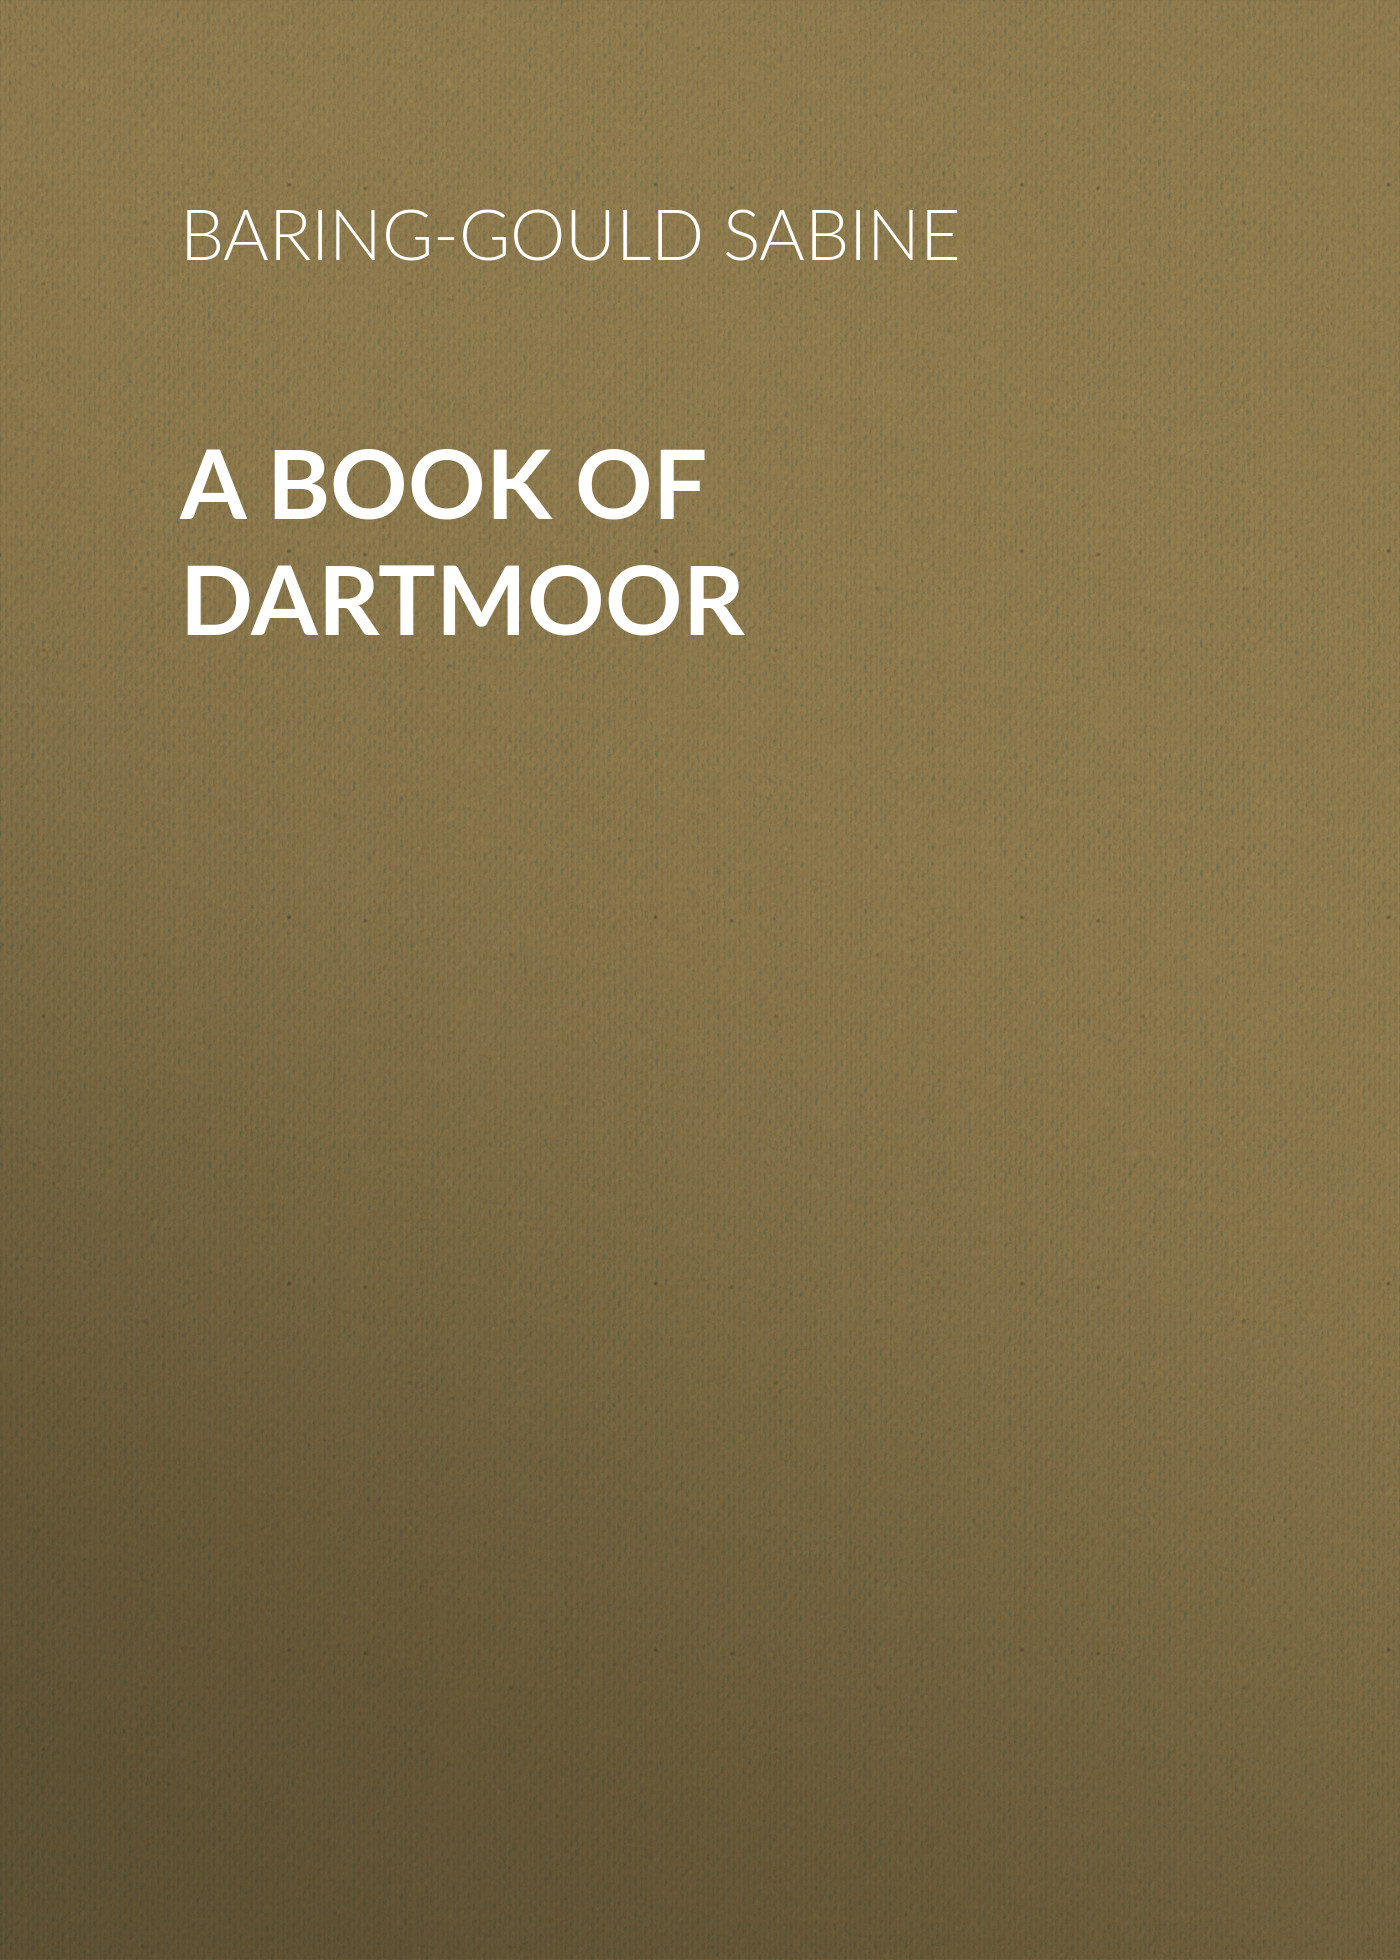 Книга A Book of Dartmoor из серии , созданная Sabine Baring-Gould, может относится к жанру Зарубежная старинная литература, Зарубежная классика. Стоимость электронной книги A Book of Dartmoor с идентификатором 24171308 составляет 0 руб.